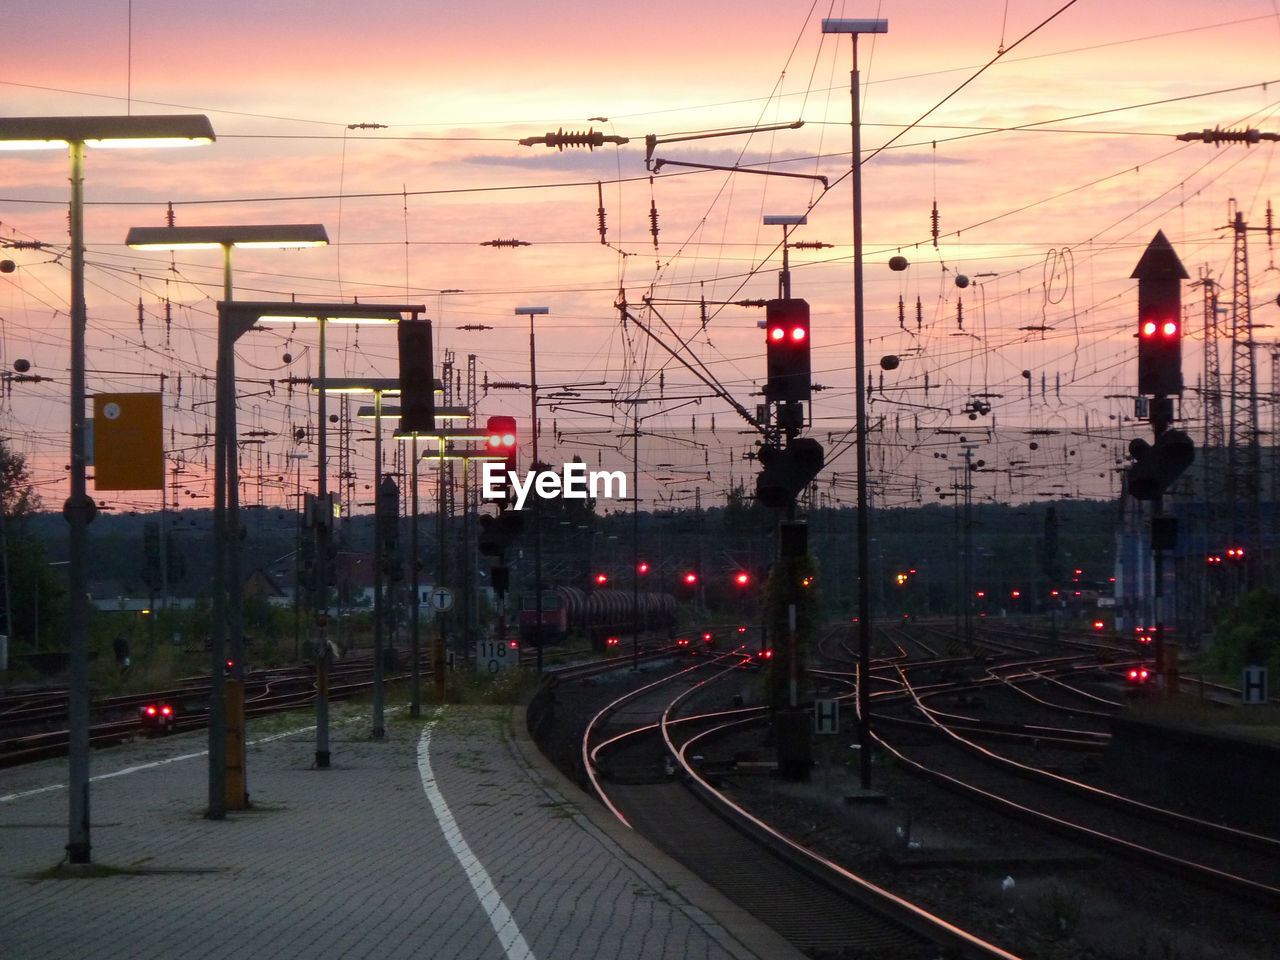 Railroad station platform during sunset